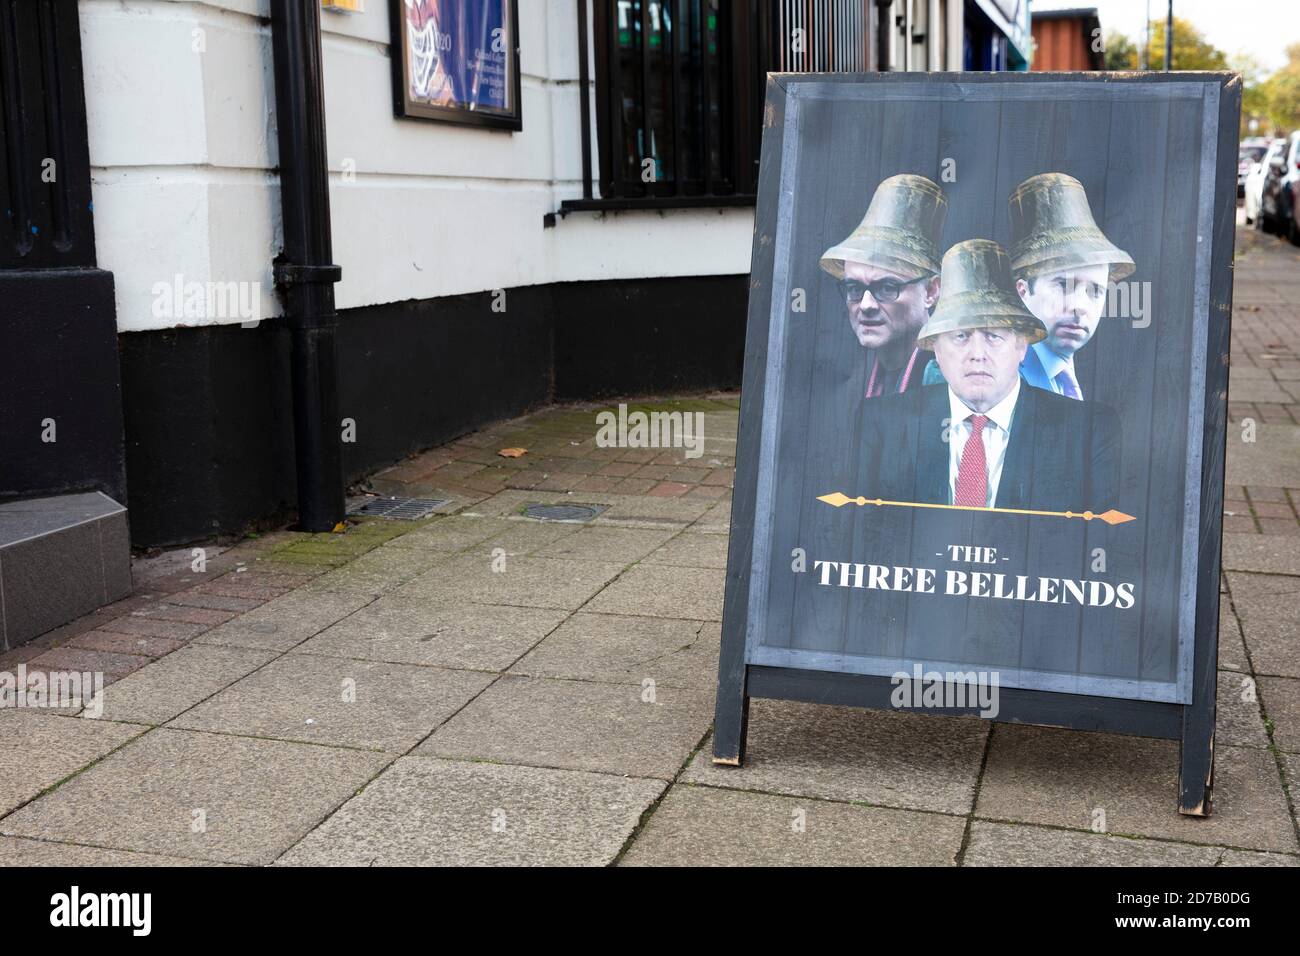 LIVERPOOL, Großbritannien - Oktober 2020: Der James Atherton Pub in Merseyside wird aus Protest gegen die britische Regierung in die drei Bellends umbenannt Stockfoto